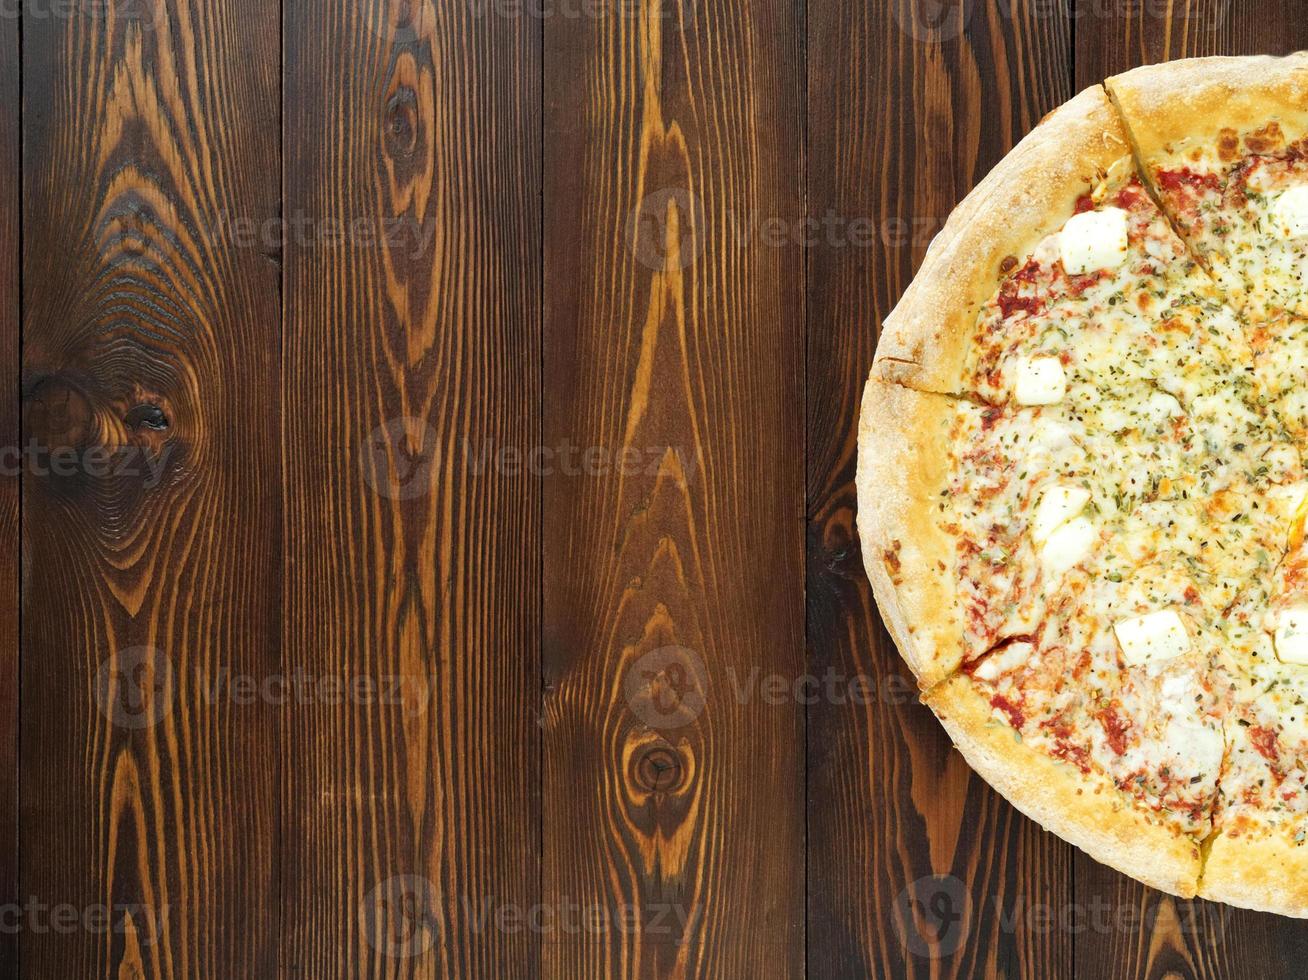 Part of Four cheese pizza with Dor-blue, Parmesan, feta, oregano, mozzarella, tomato sauce, photo